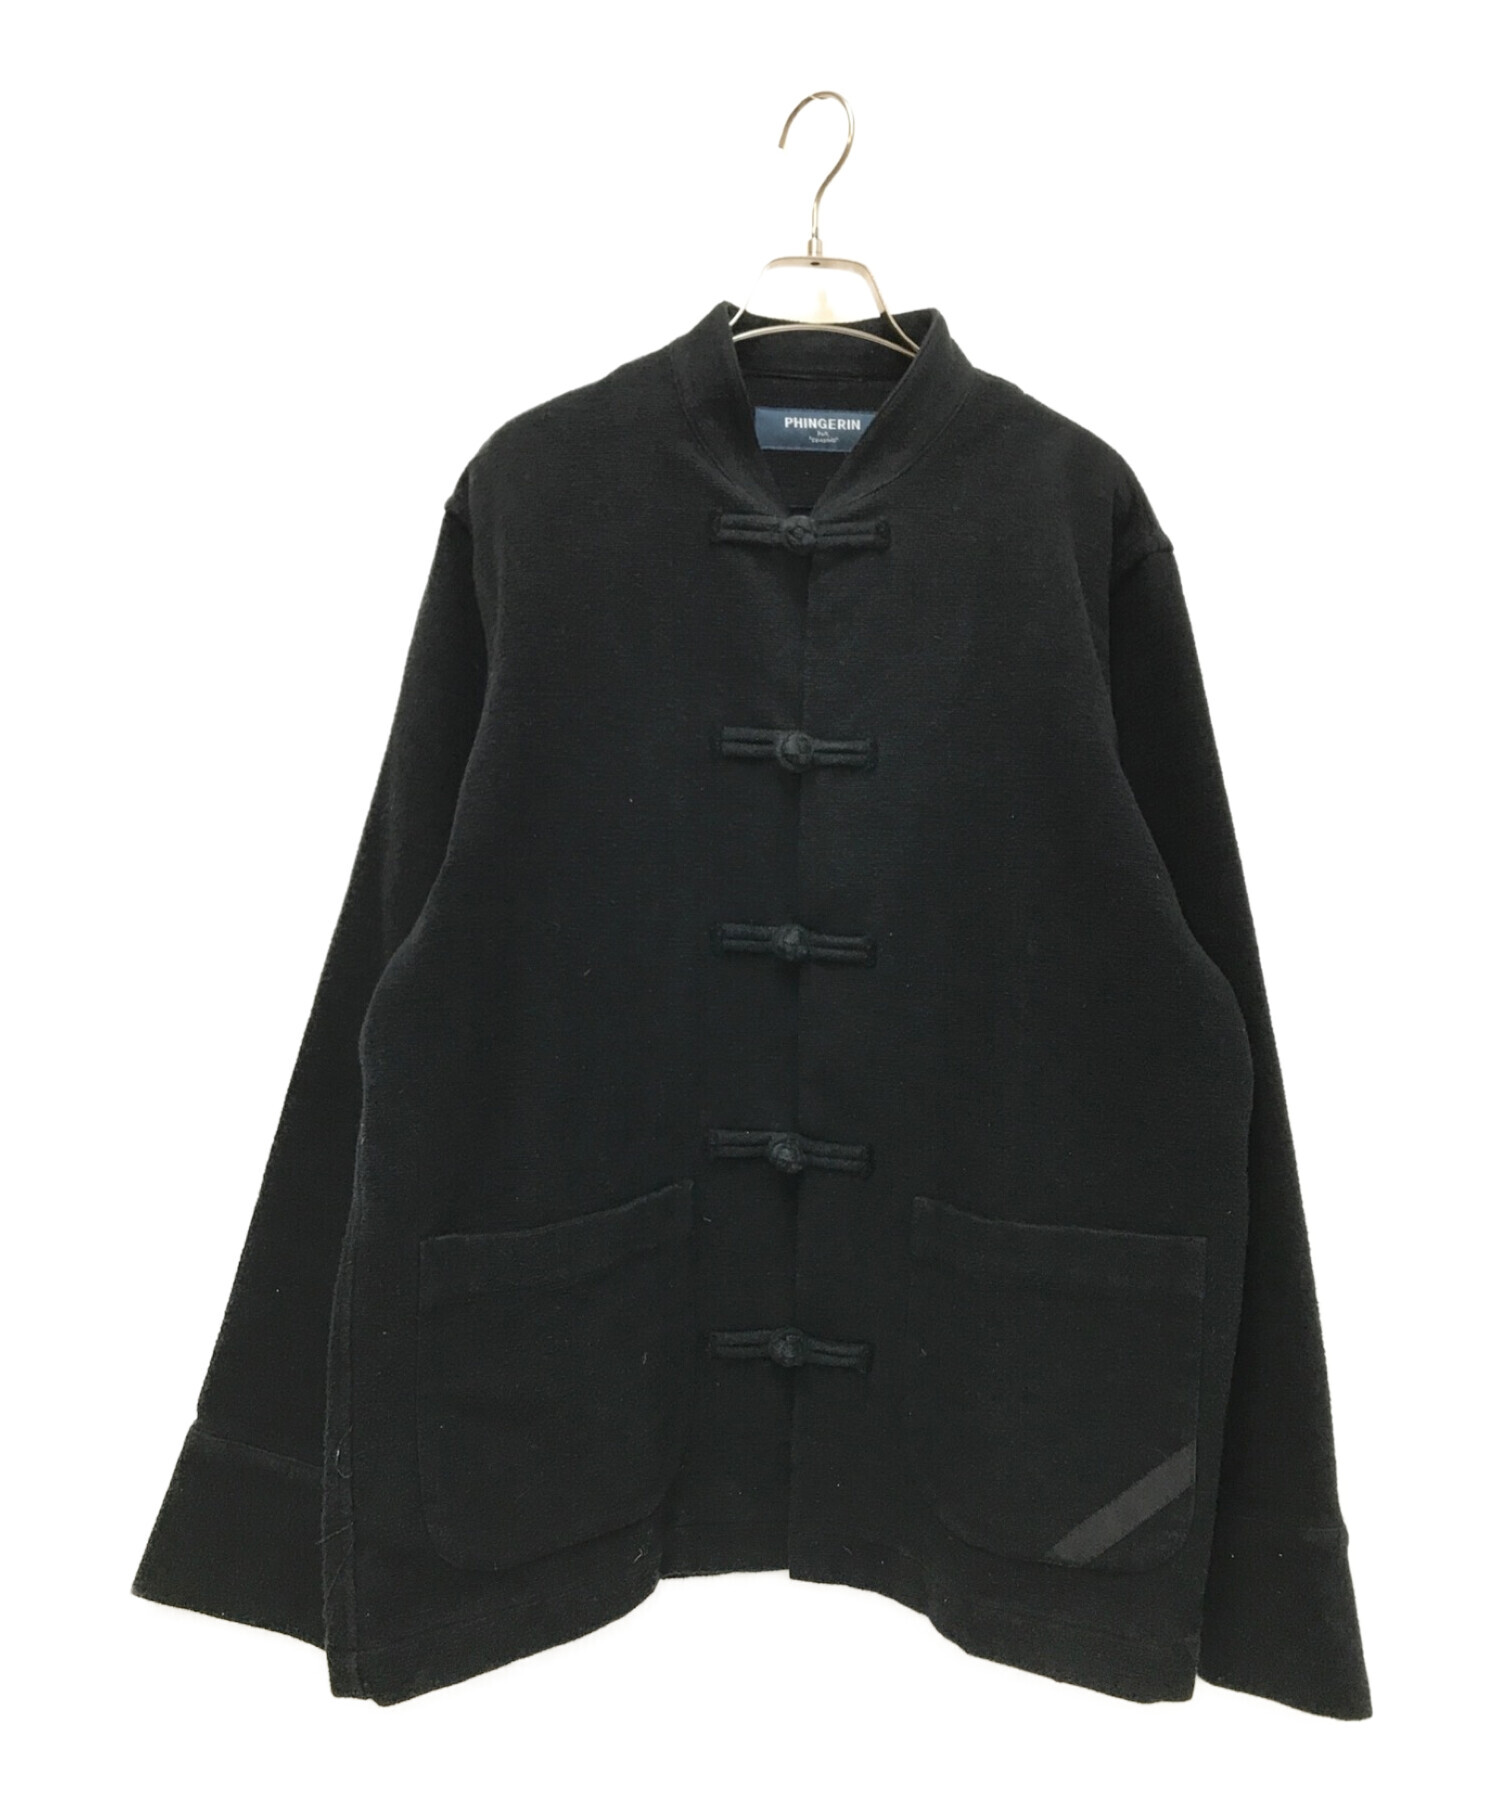 PHINGERIN (フィンガリン) チャイナジャケット ブラック サイズ:M